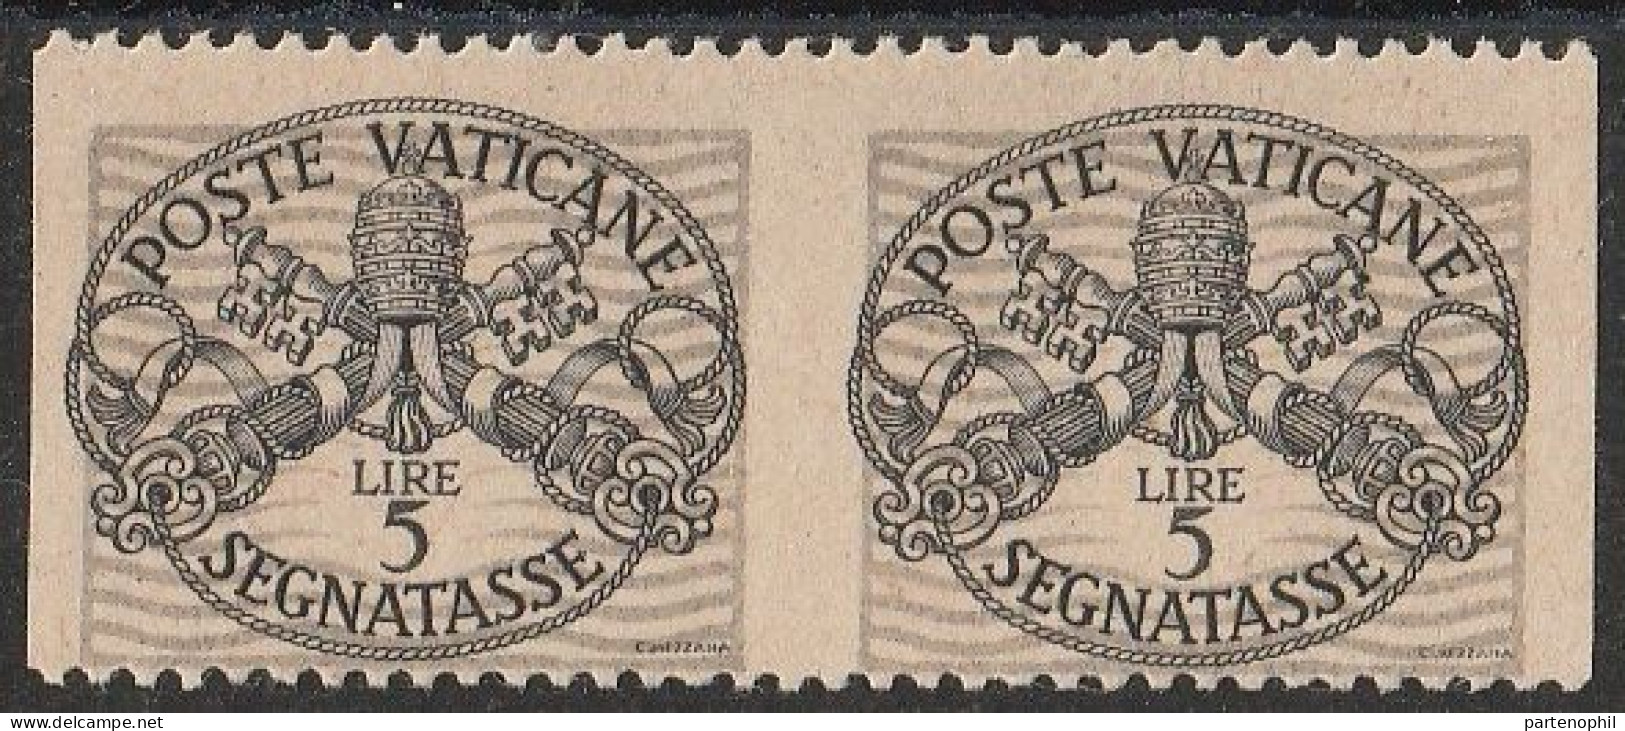 Lotto 424 Vaticano Varietà 1946 - Segnatasse Coppia Verticale Del L. 5 Non Dentellata N. 12c. MH - Errors & Oddities